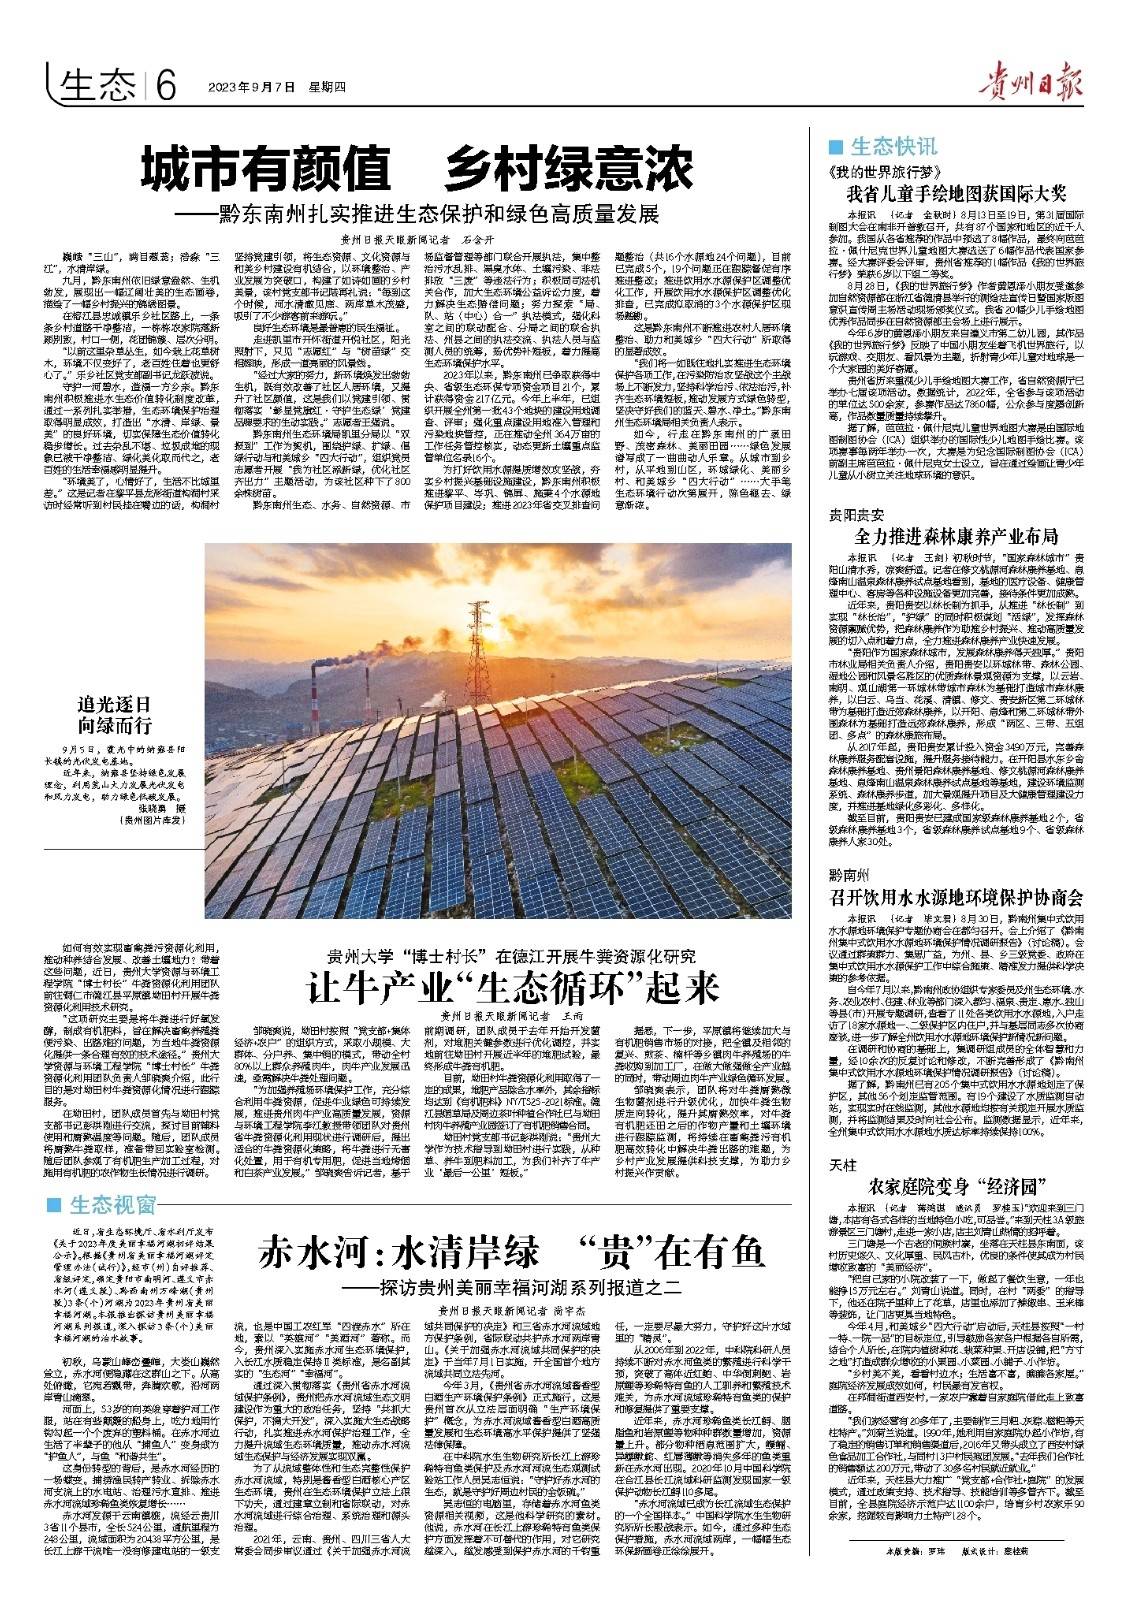 版面速览 | 9月7日贵州日报《生态》新闻版